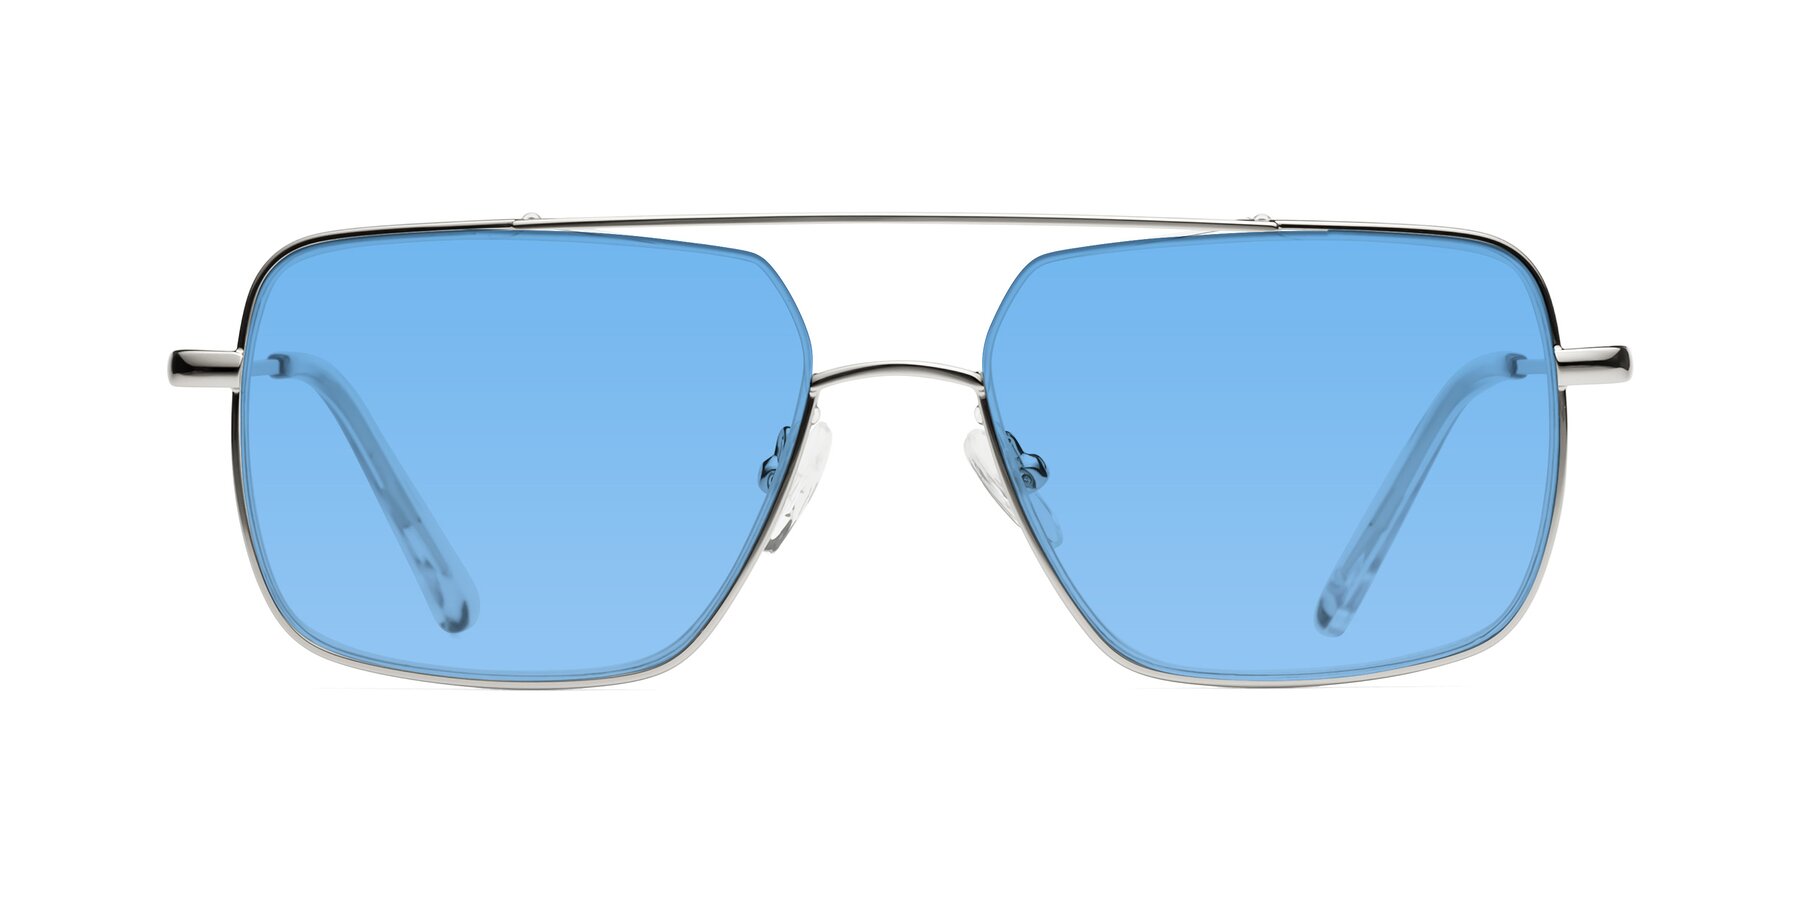 Jever - Silver Sunglasses